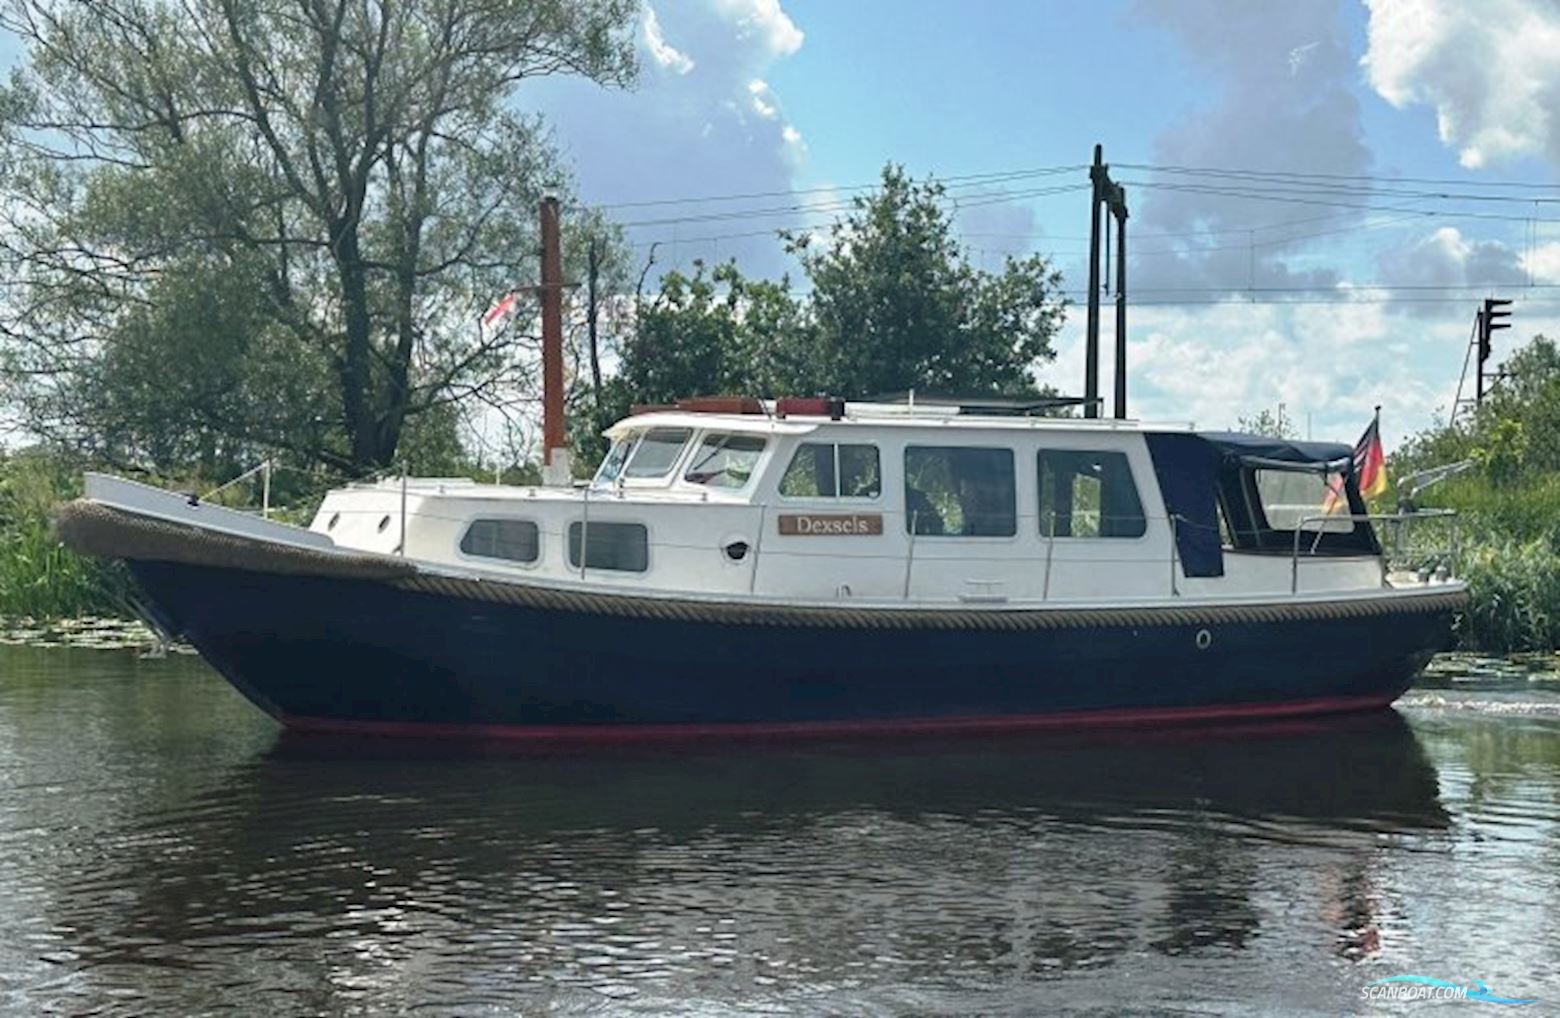 Westerdijkvlet OK Motor boat 1992, with Daf engine, The Netherlands